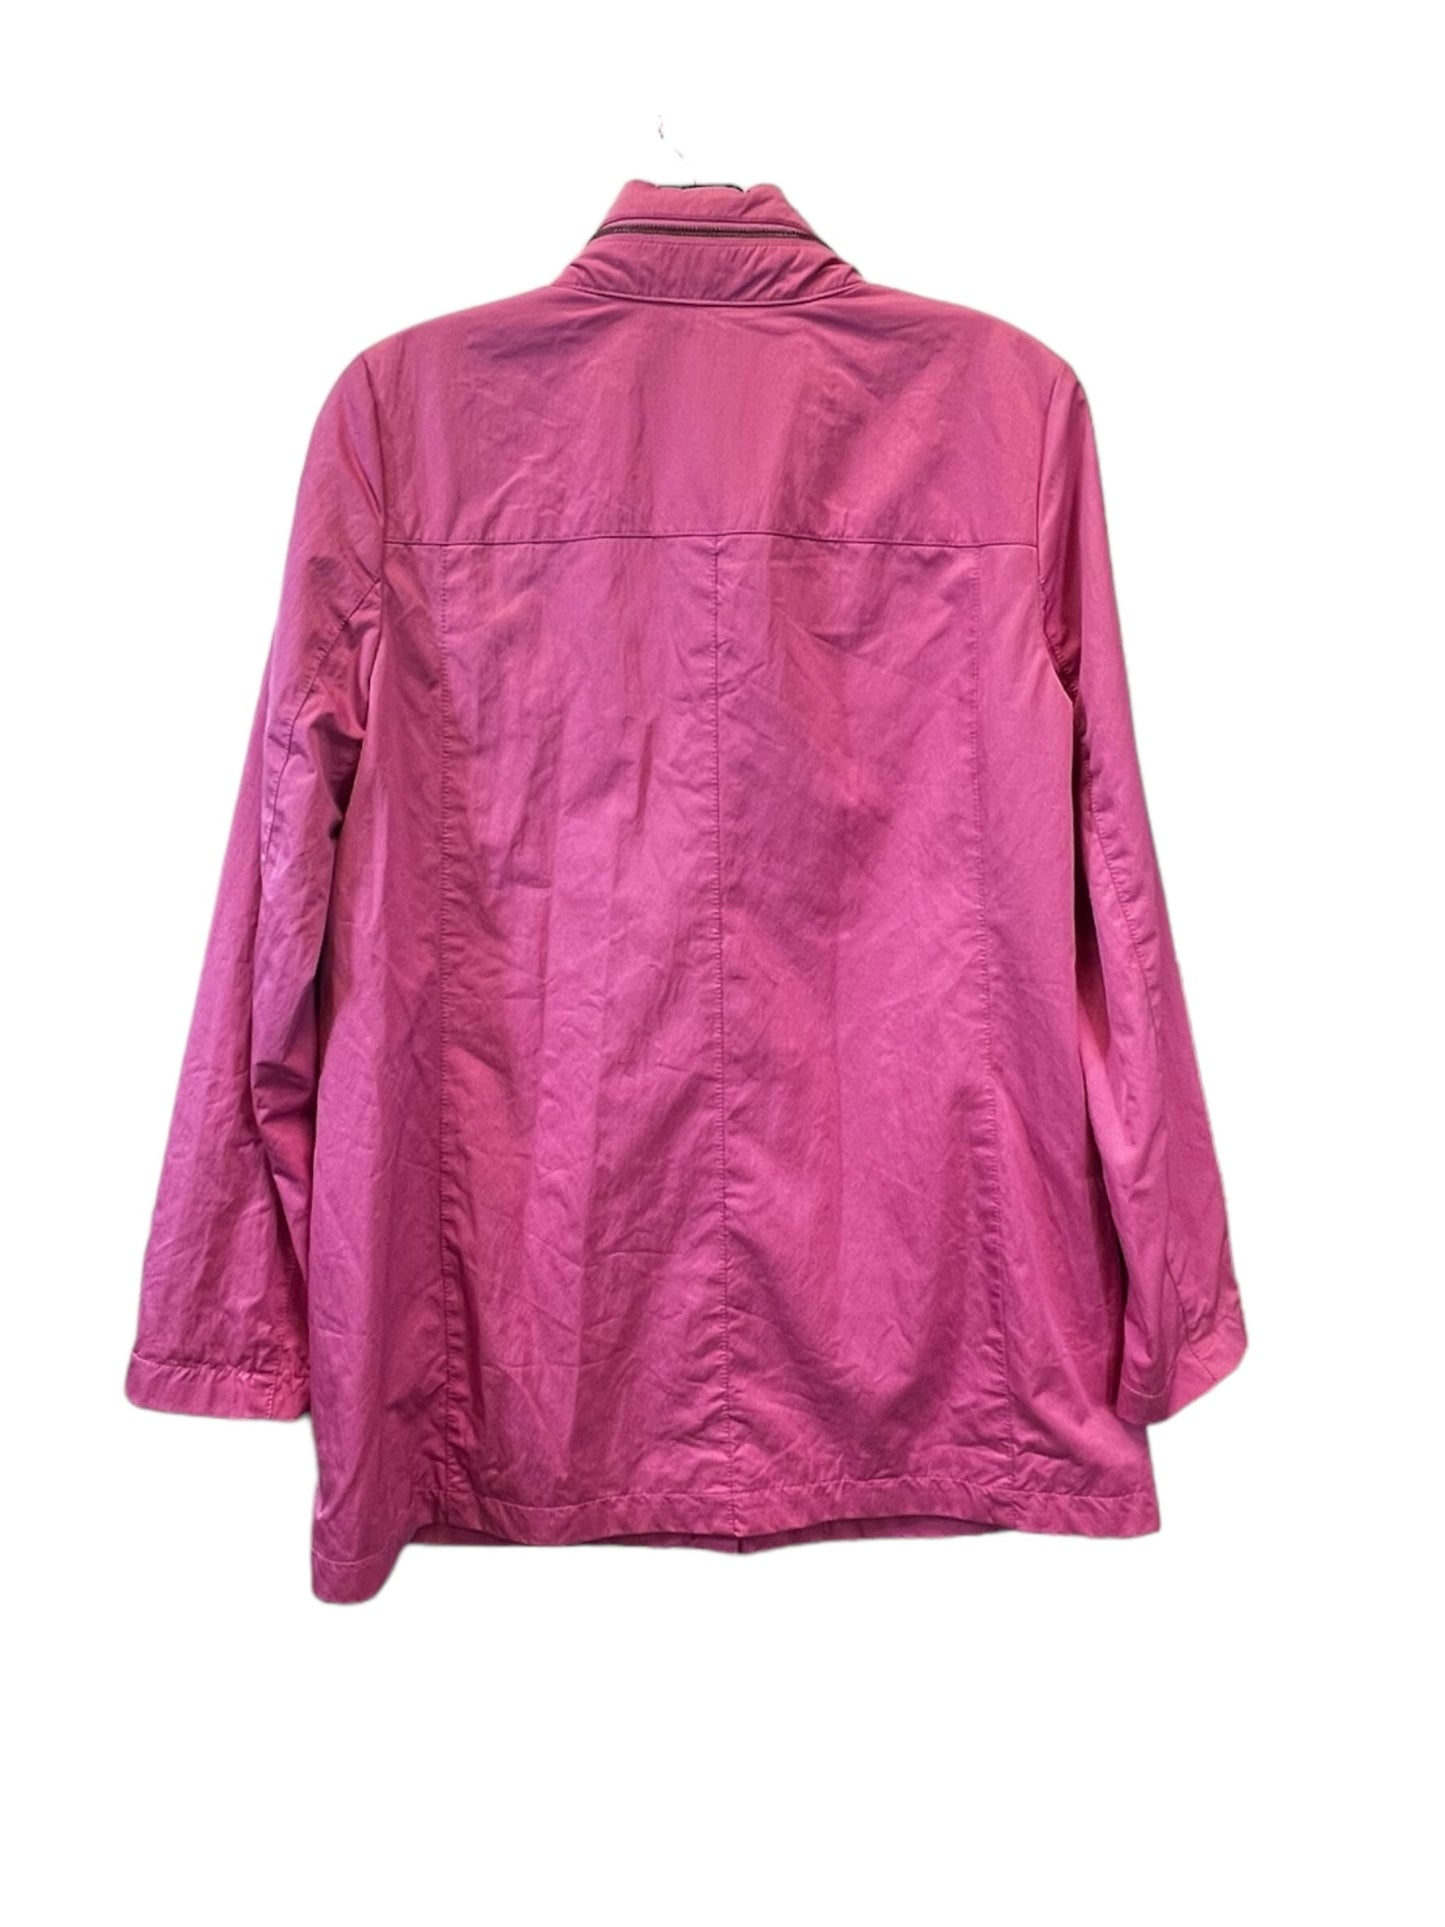 Pink Jacket Windbreaker J. Jill, Size Xs